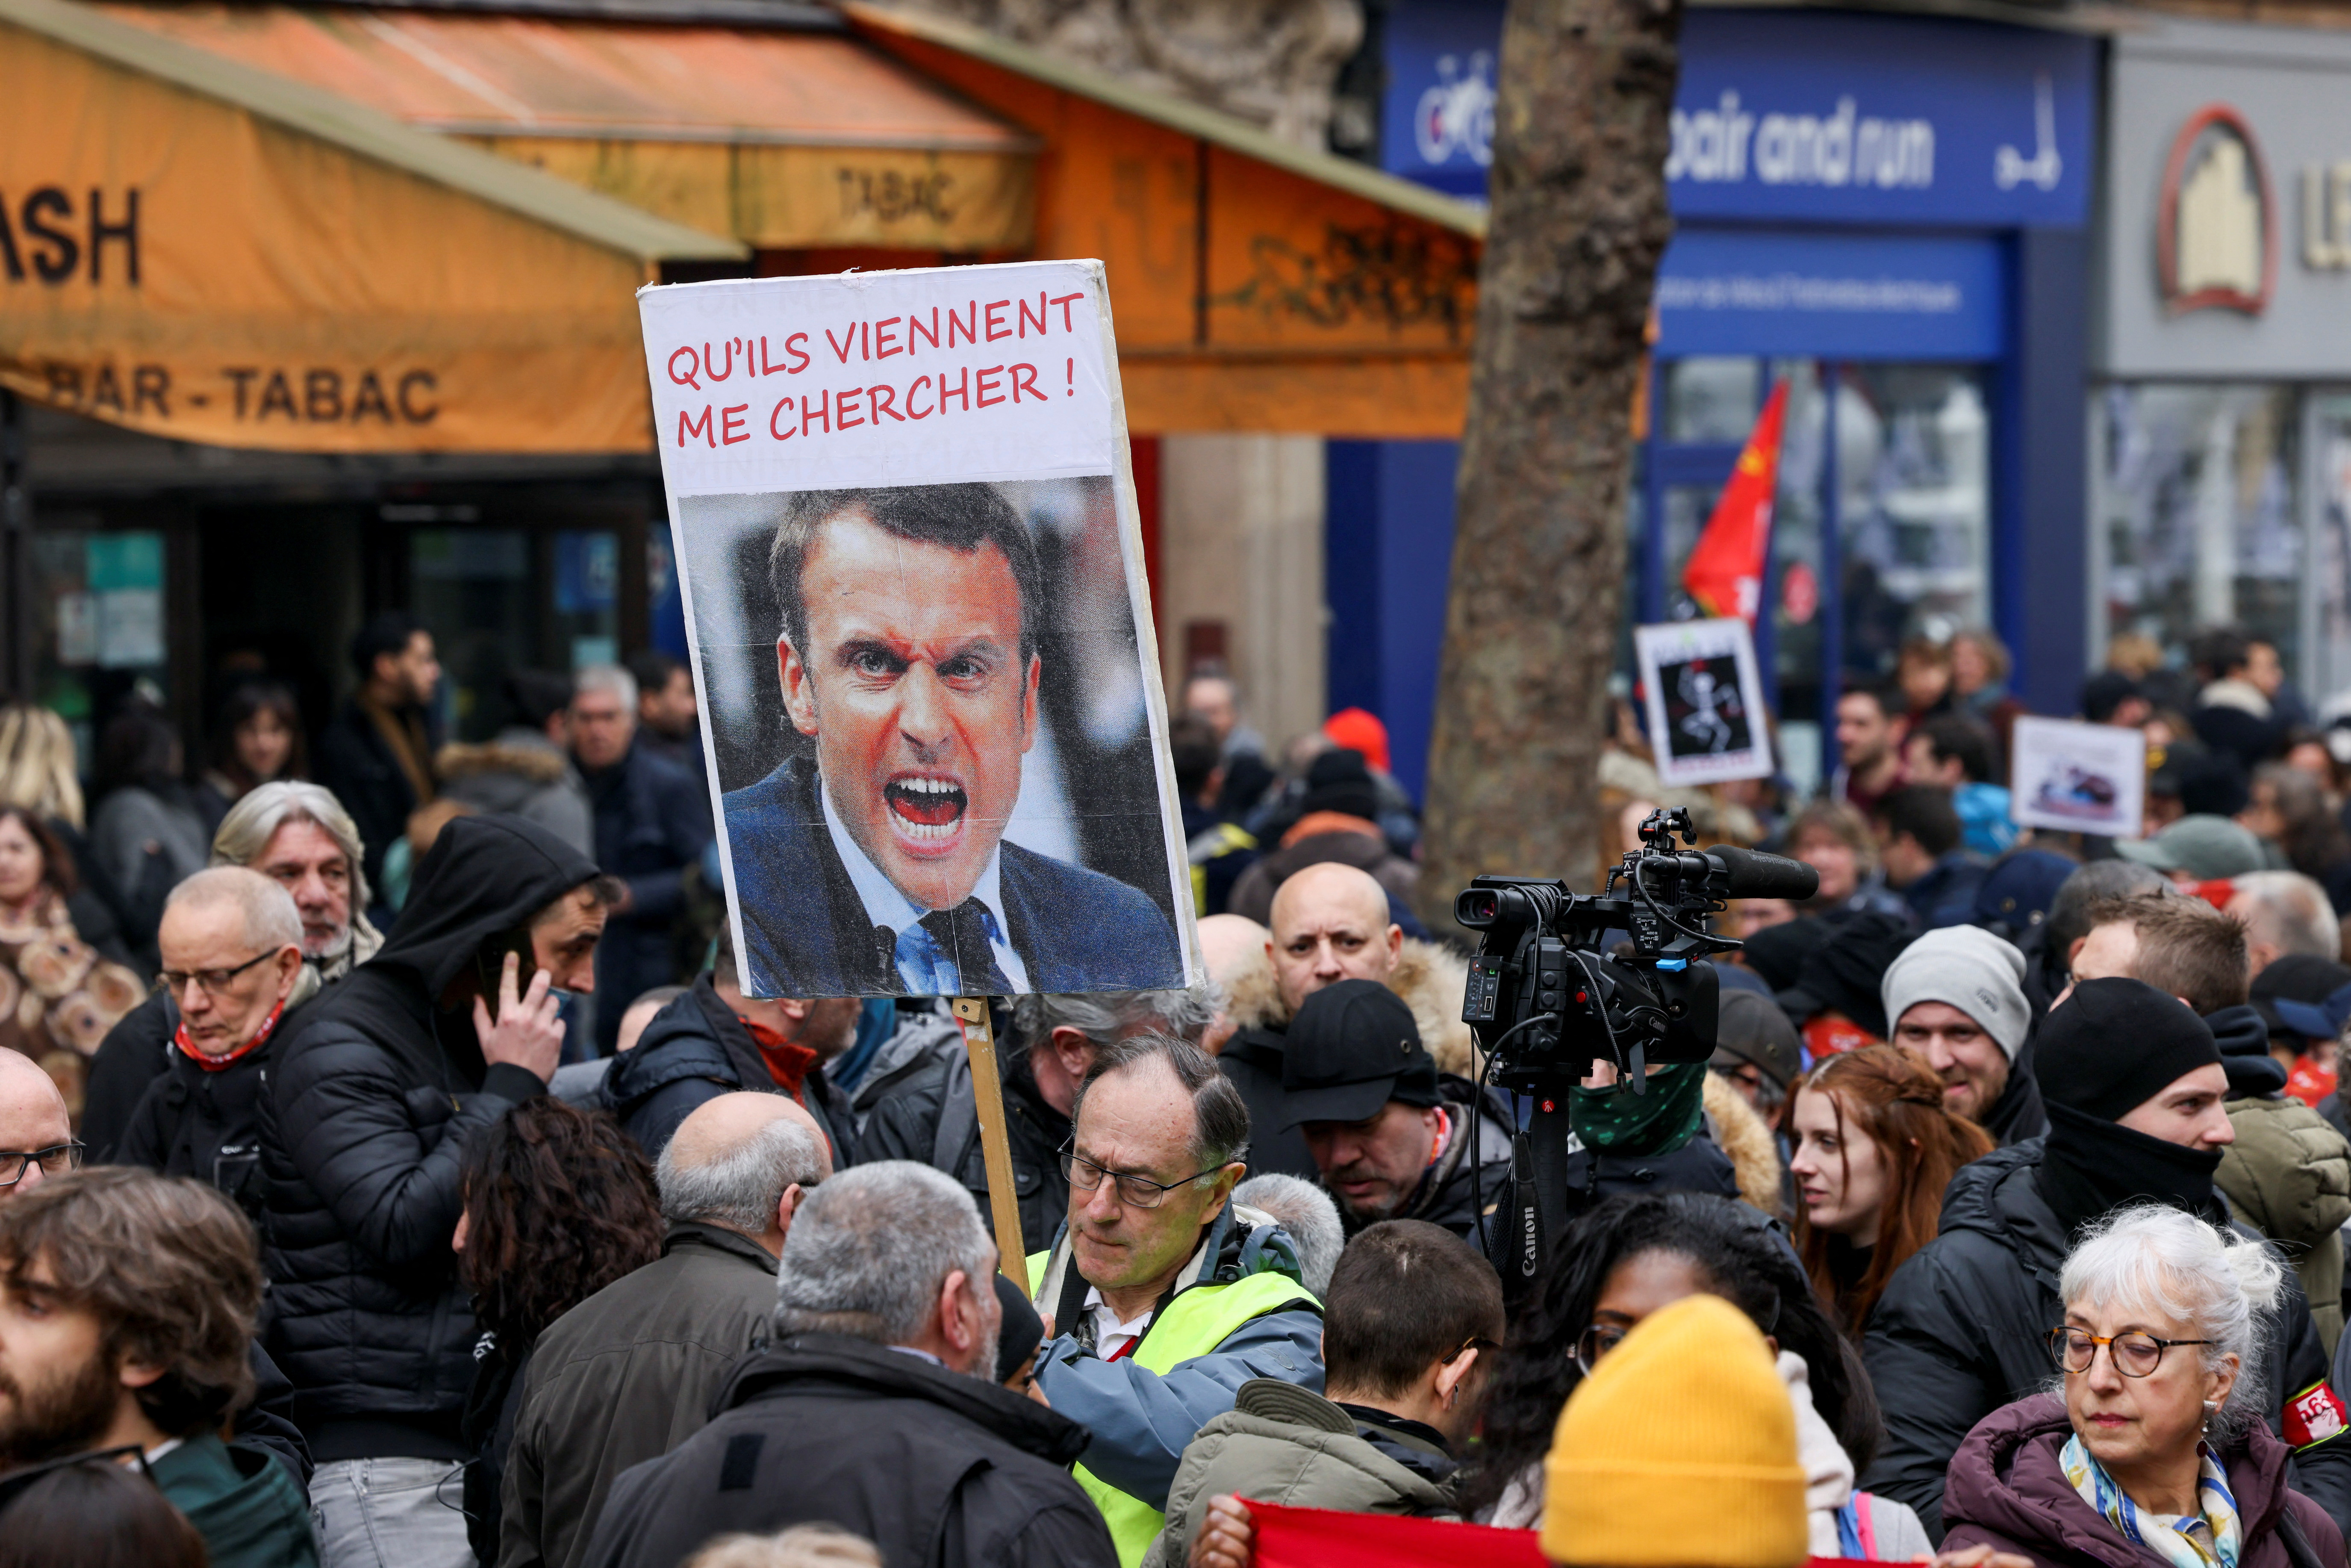 Una persona sostiene un cartel con una imagen del presidente francés, Emmanuel Macron, durante una manifestación contra el plan de reforma de las pensiones del gobierno francés como parte del cuarto día de protestas nacionales, en París, Francia, 11 de febrero de 2023. El cartel dice: '¡Que vengan a por mí! REUTERS/Yves Herman